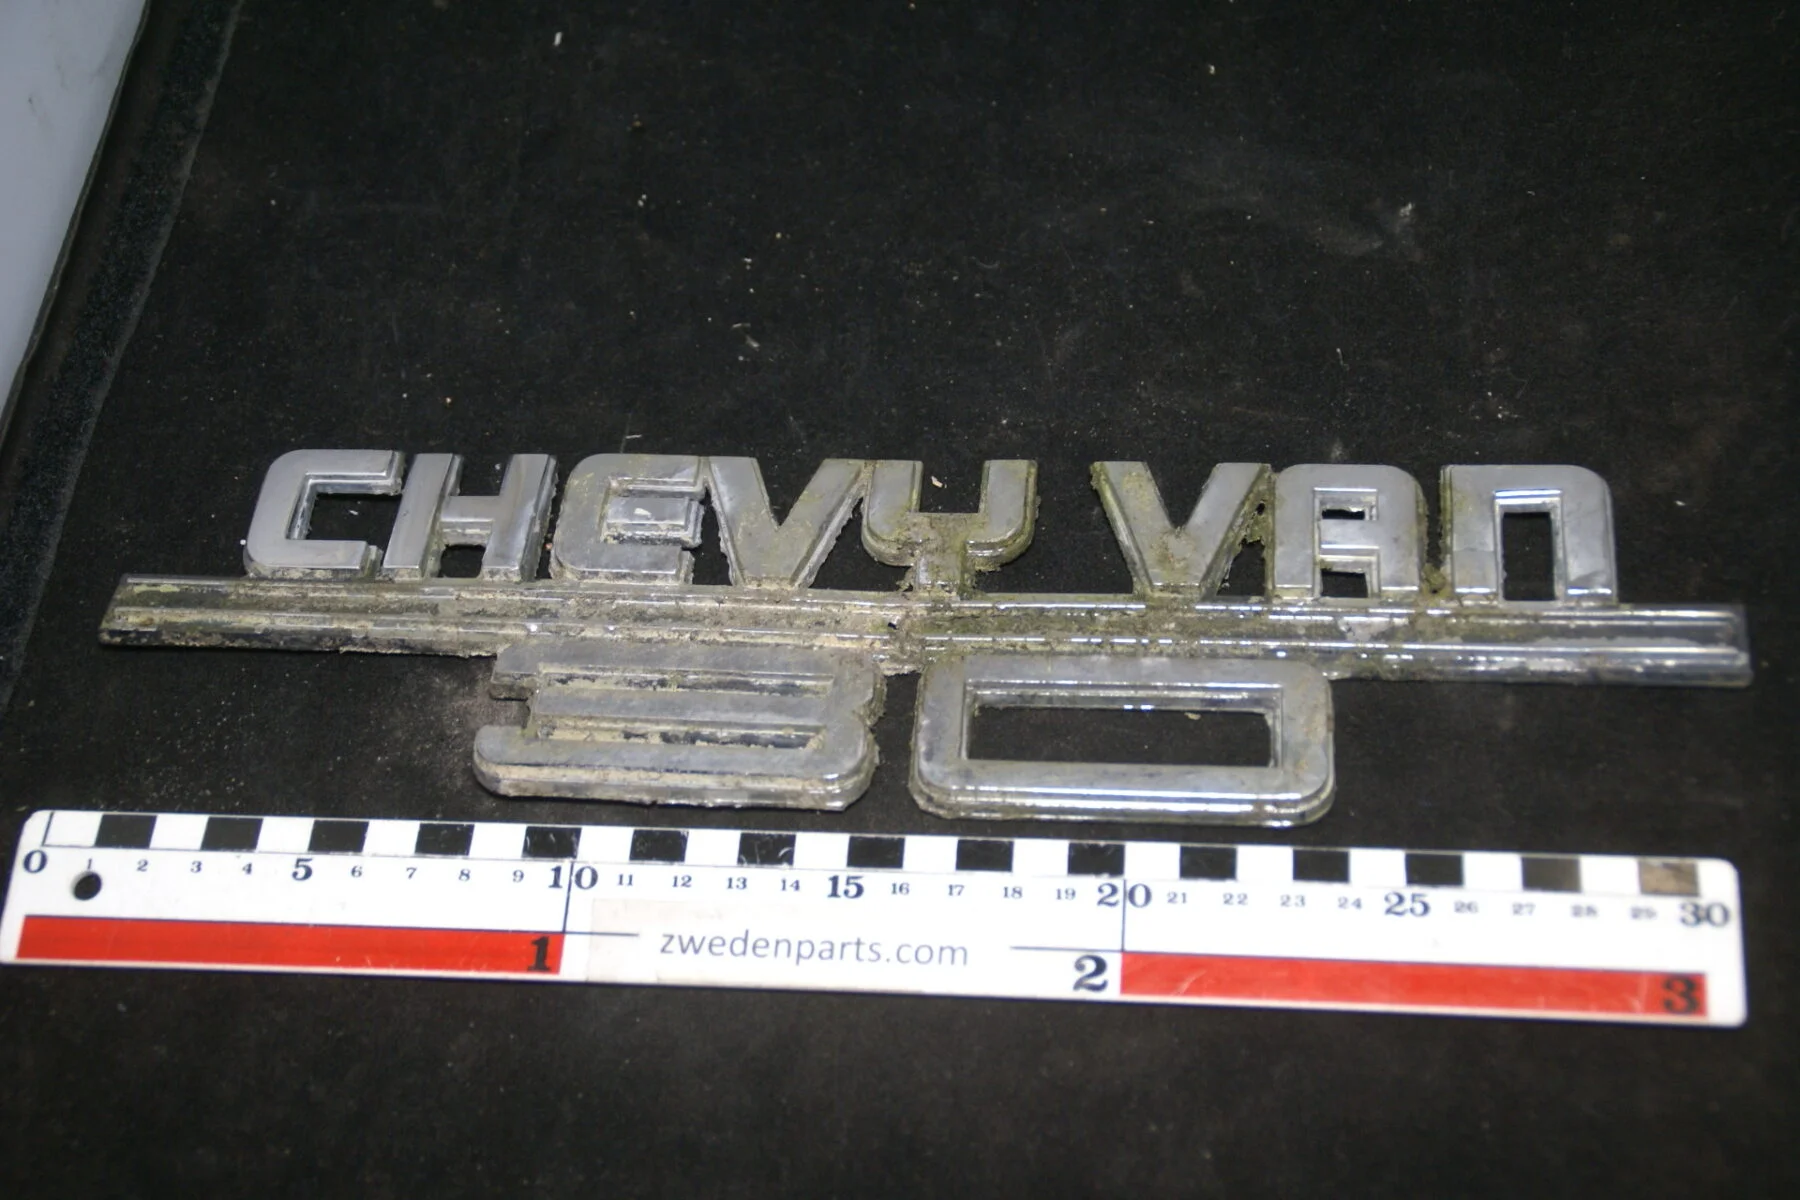 DSC01406 origineel embleem Chevrolet Chevy van -54282ad4